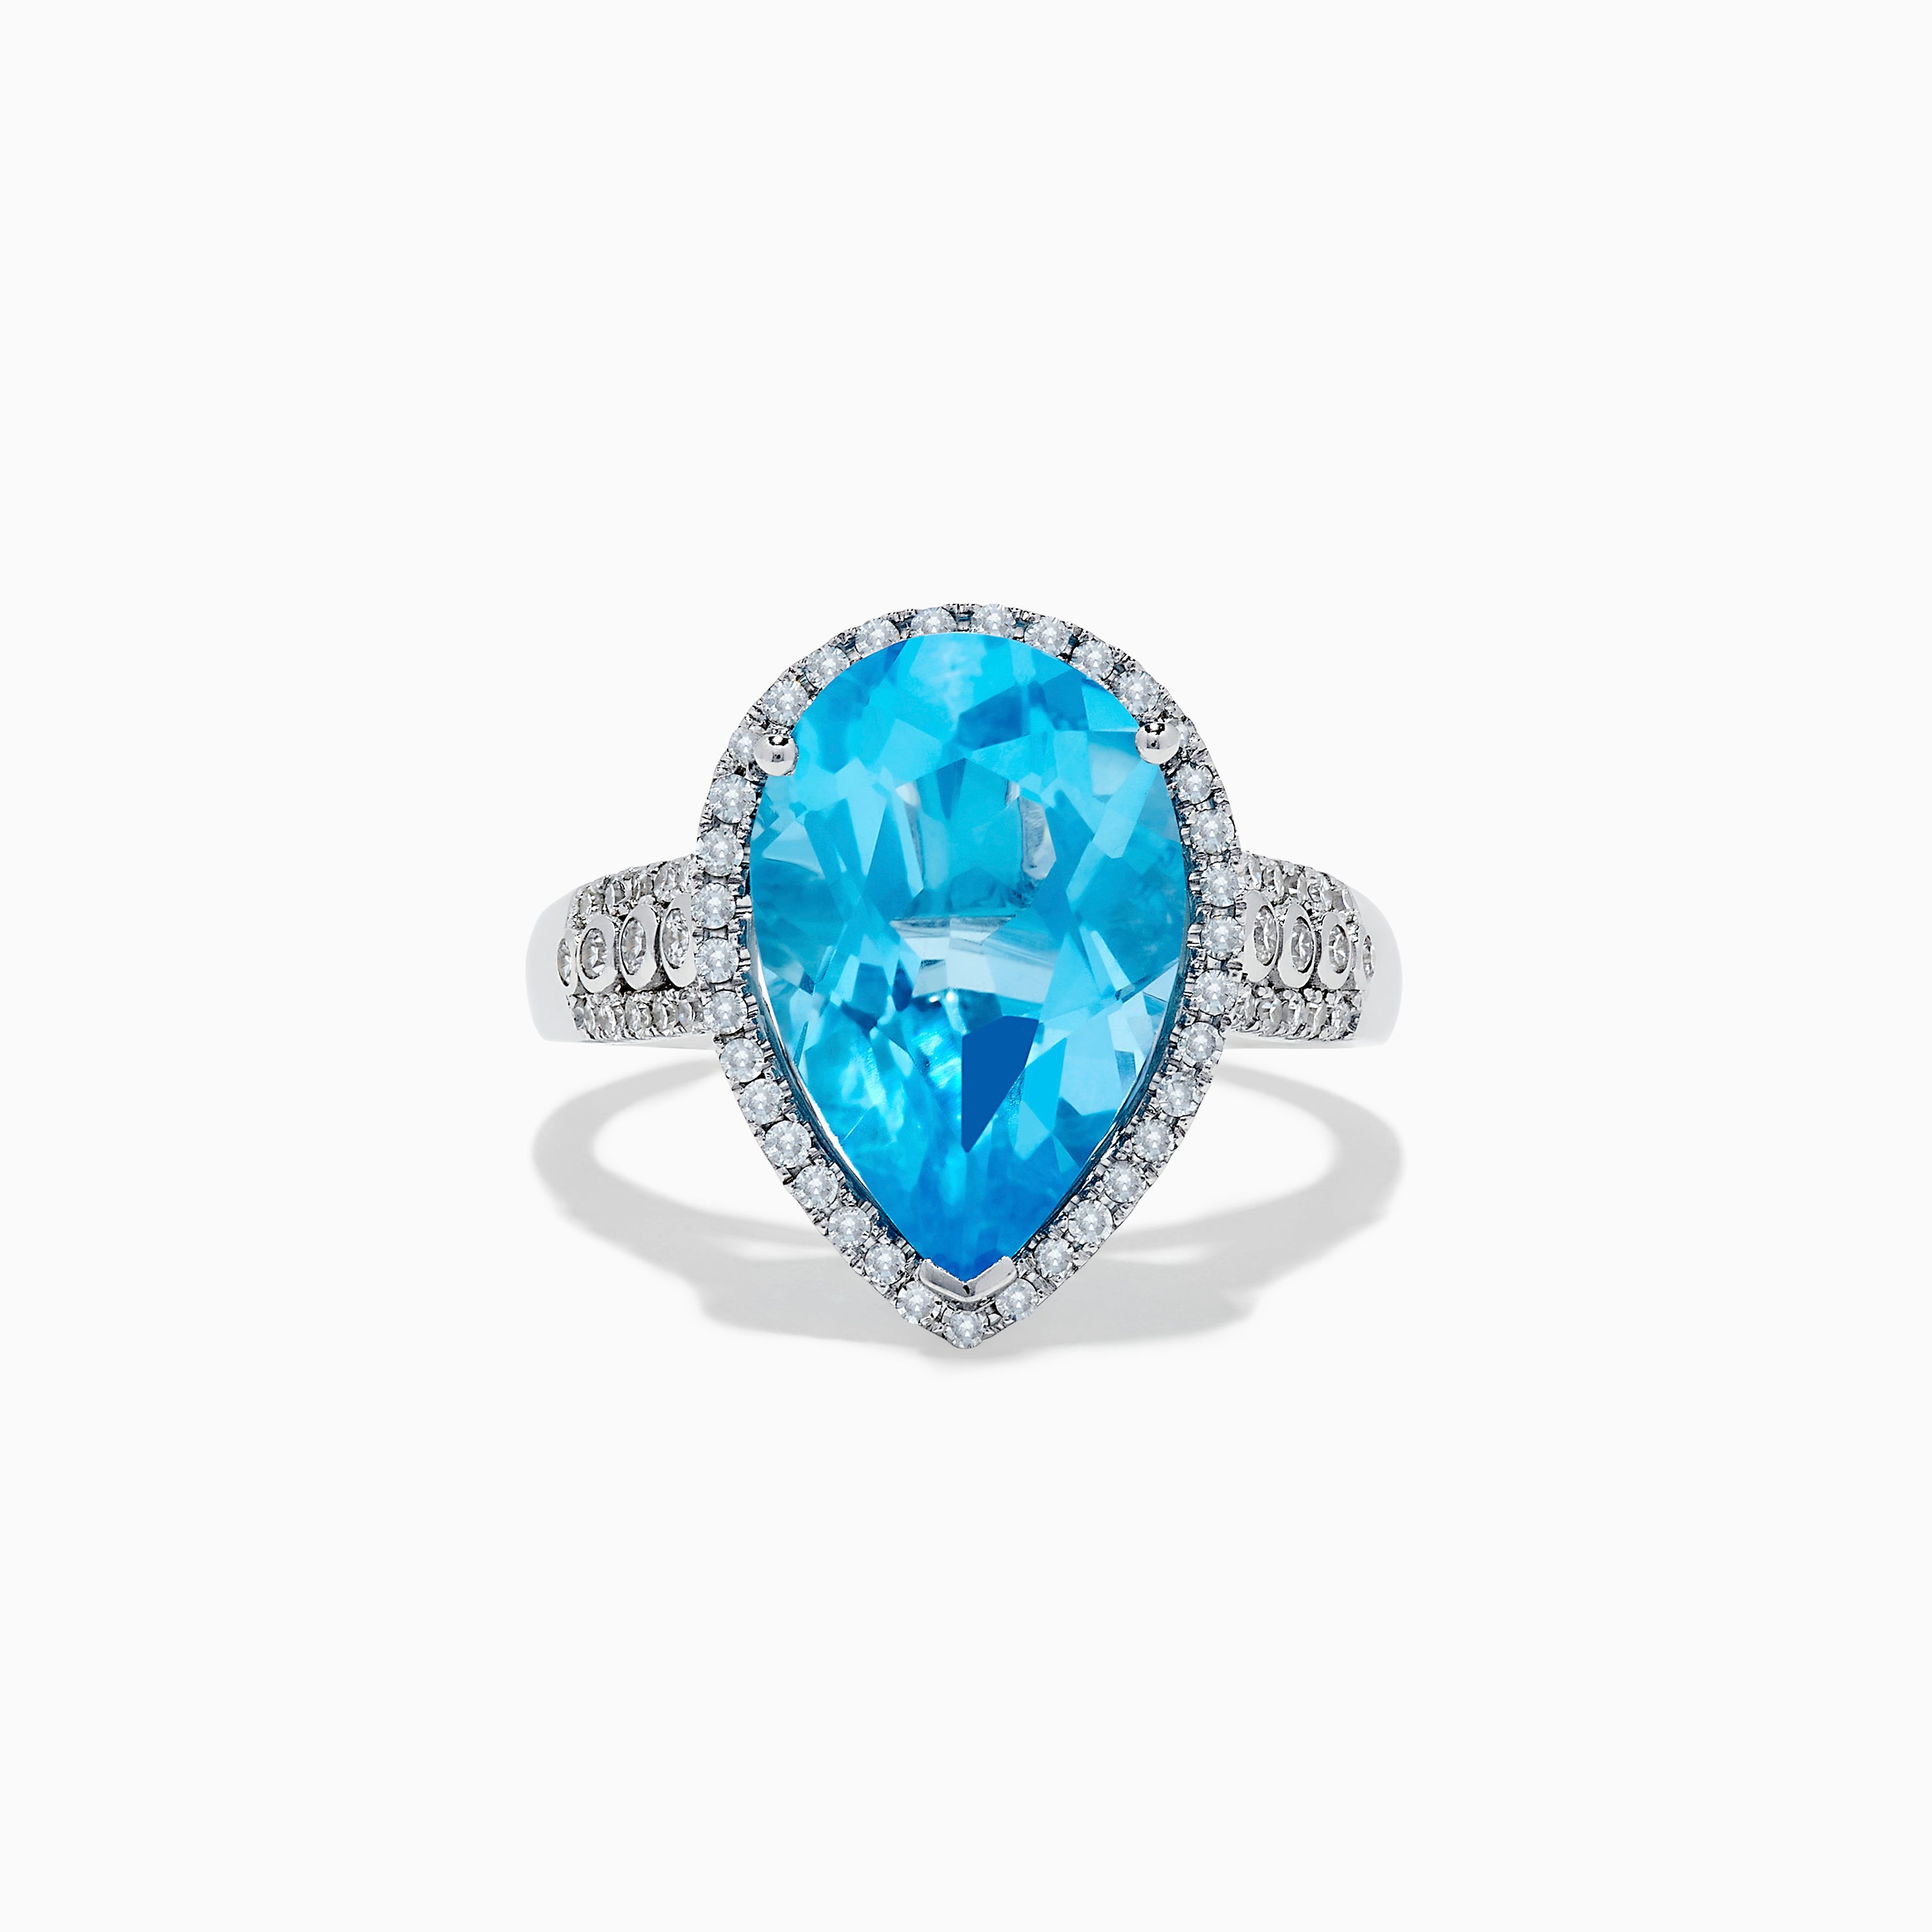 Effy Ocean Bleu 14K White Gold Blue Topaz and Diamond Pear Shaped Ring